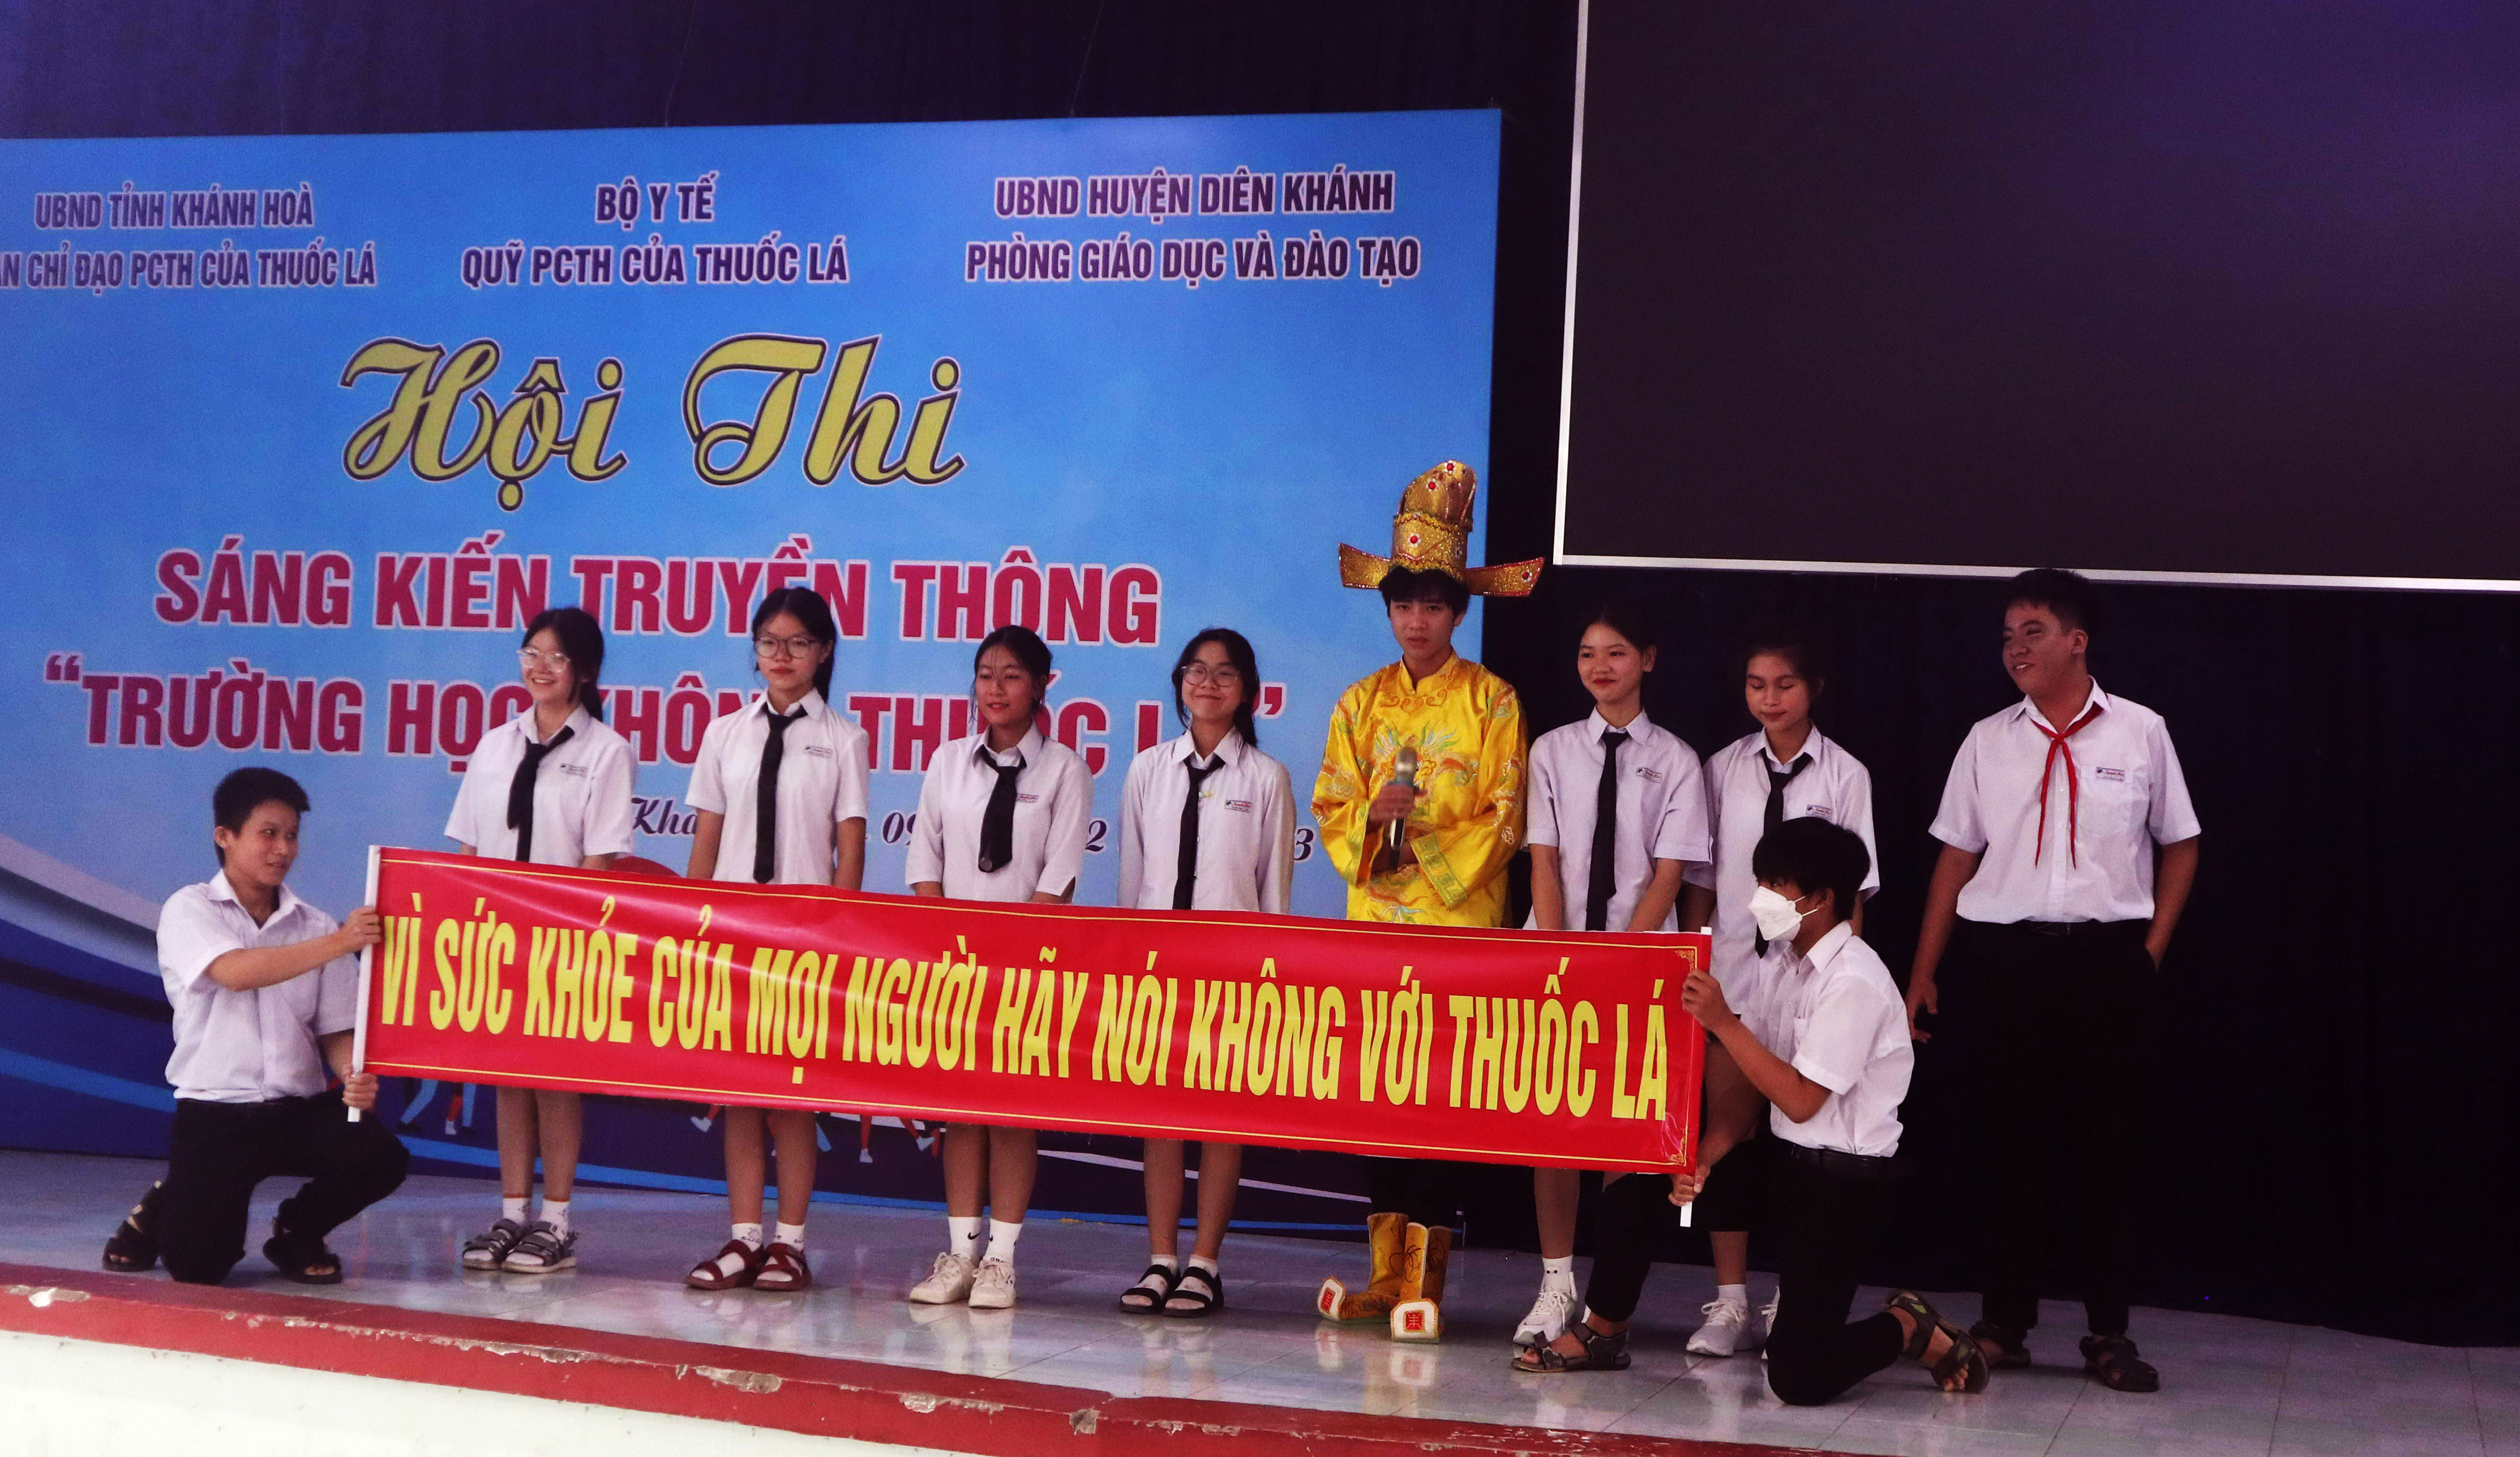 Hội thi sáng kiến truyền thông “Trường học không khói thuốc” trên địa bàn huyện Diên Khánh